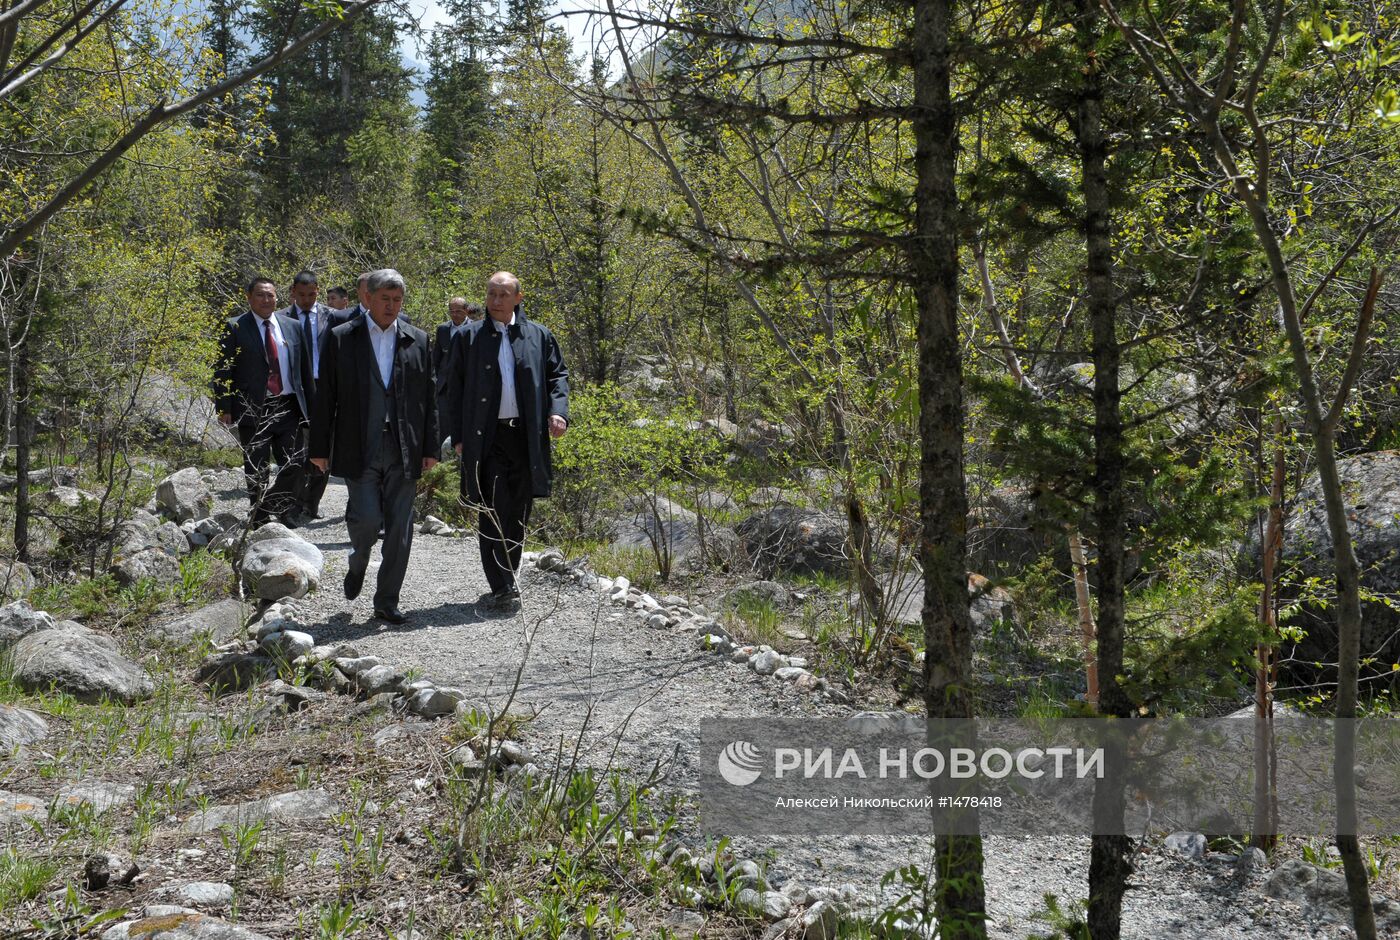 Рабочая поездка В.Путина в Киргизию